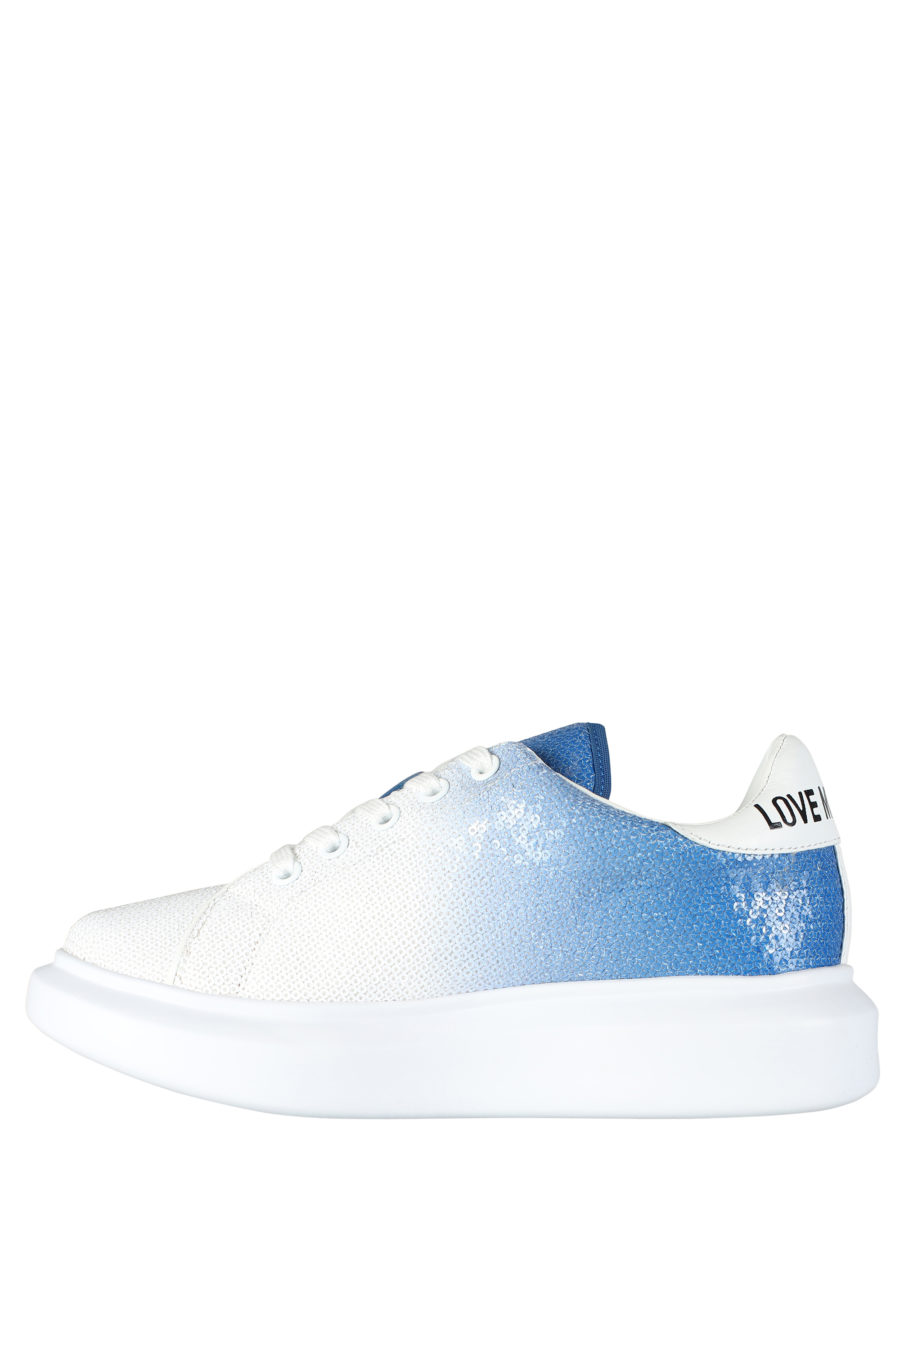 Zapatillas blancas con degrade azul y lentejuelas - IMG 5260